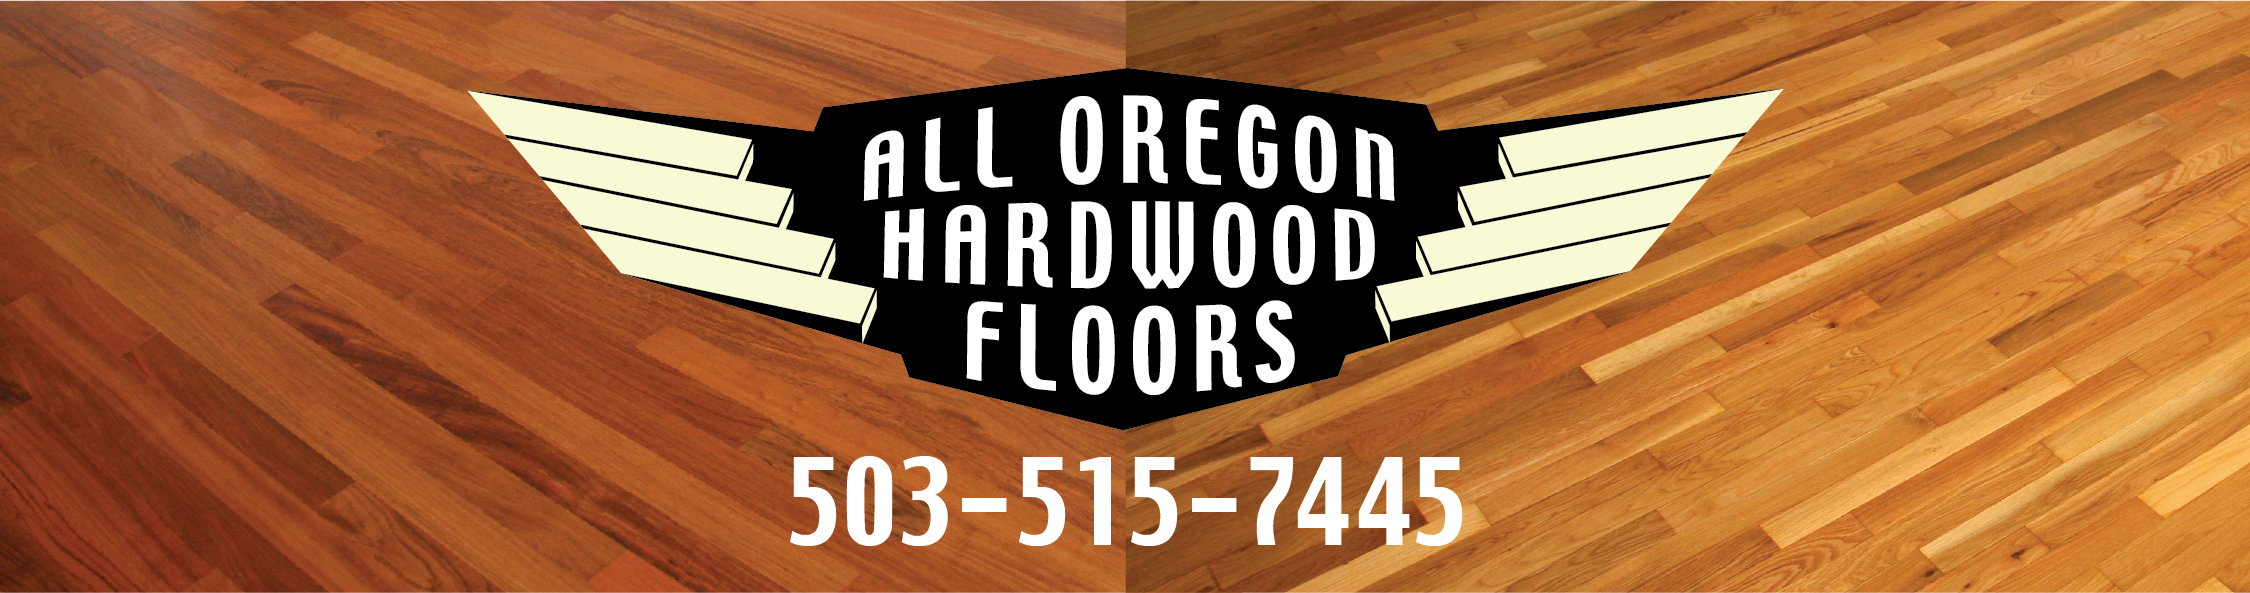 All Oregon Hardwood Floors